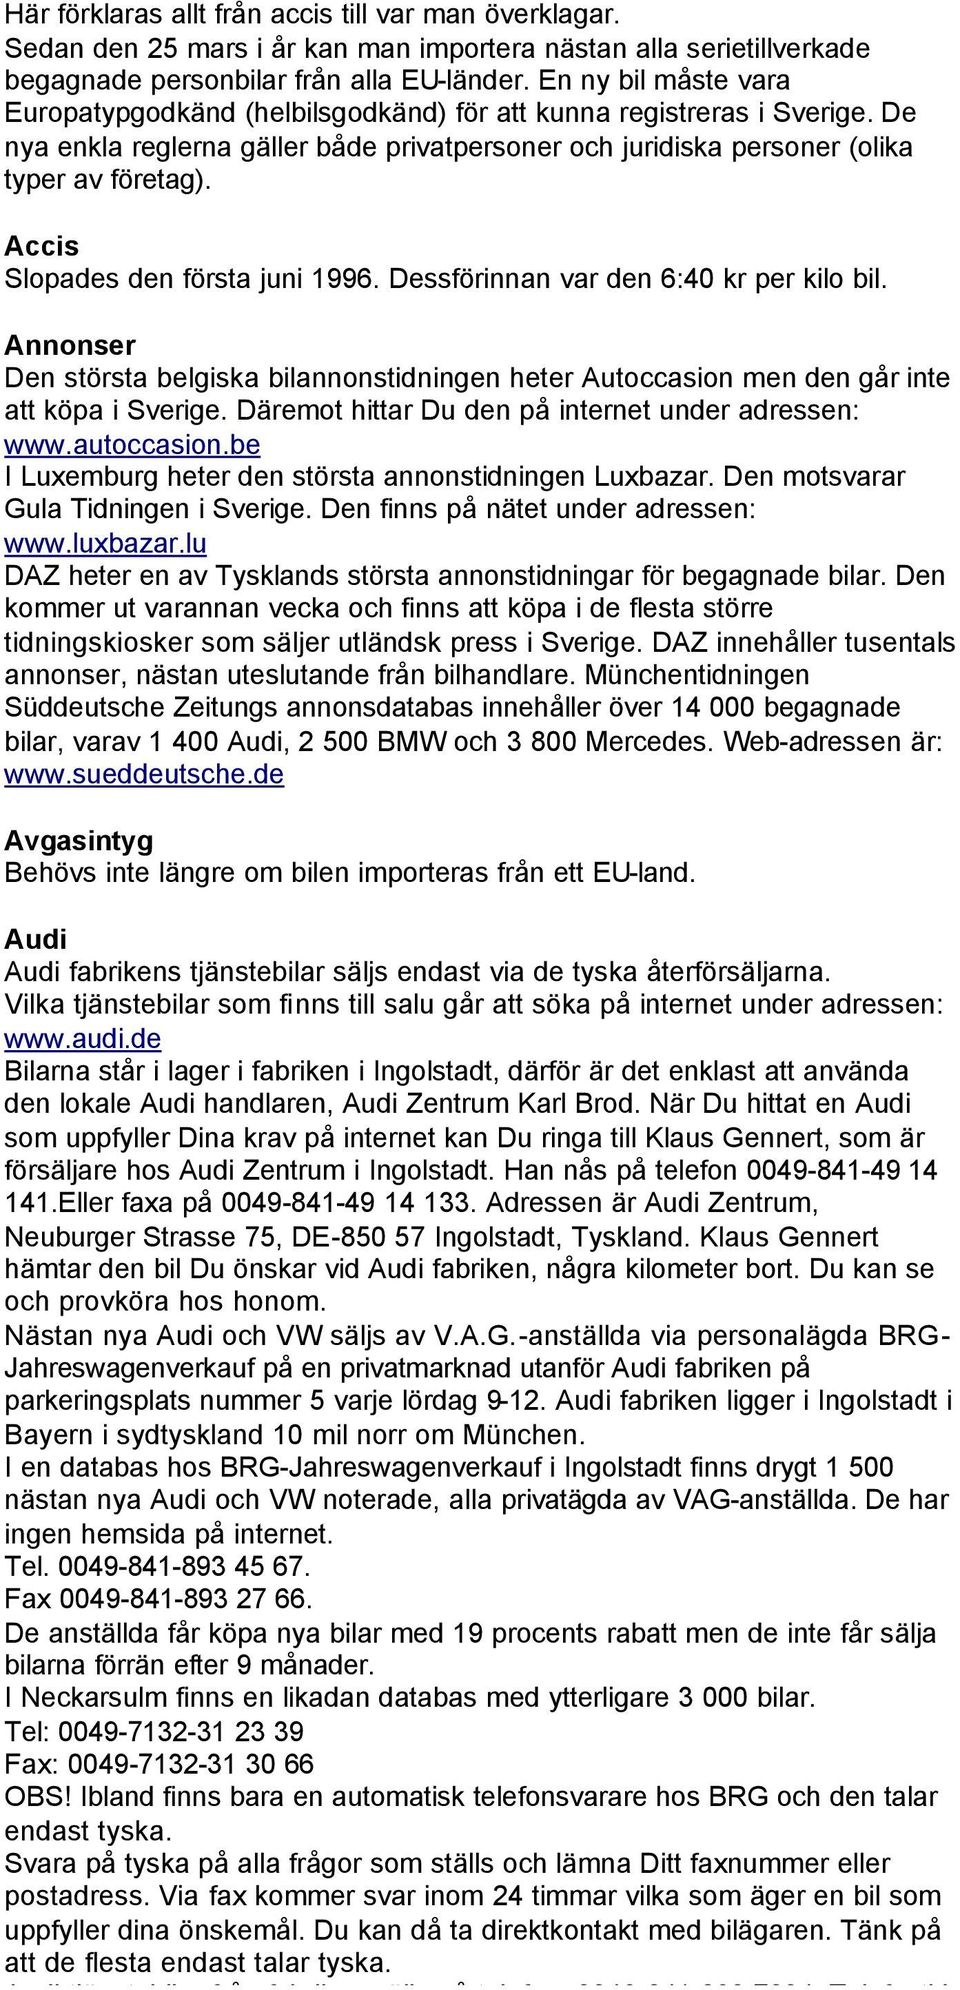 Accis Slopades den första juni 1996. Dessförinnan var den 6:40 kr per kilo bil. Annonser Den största belgiska bilannonstidningen heter Autoccasion men den går inte att köpa i Sverige.